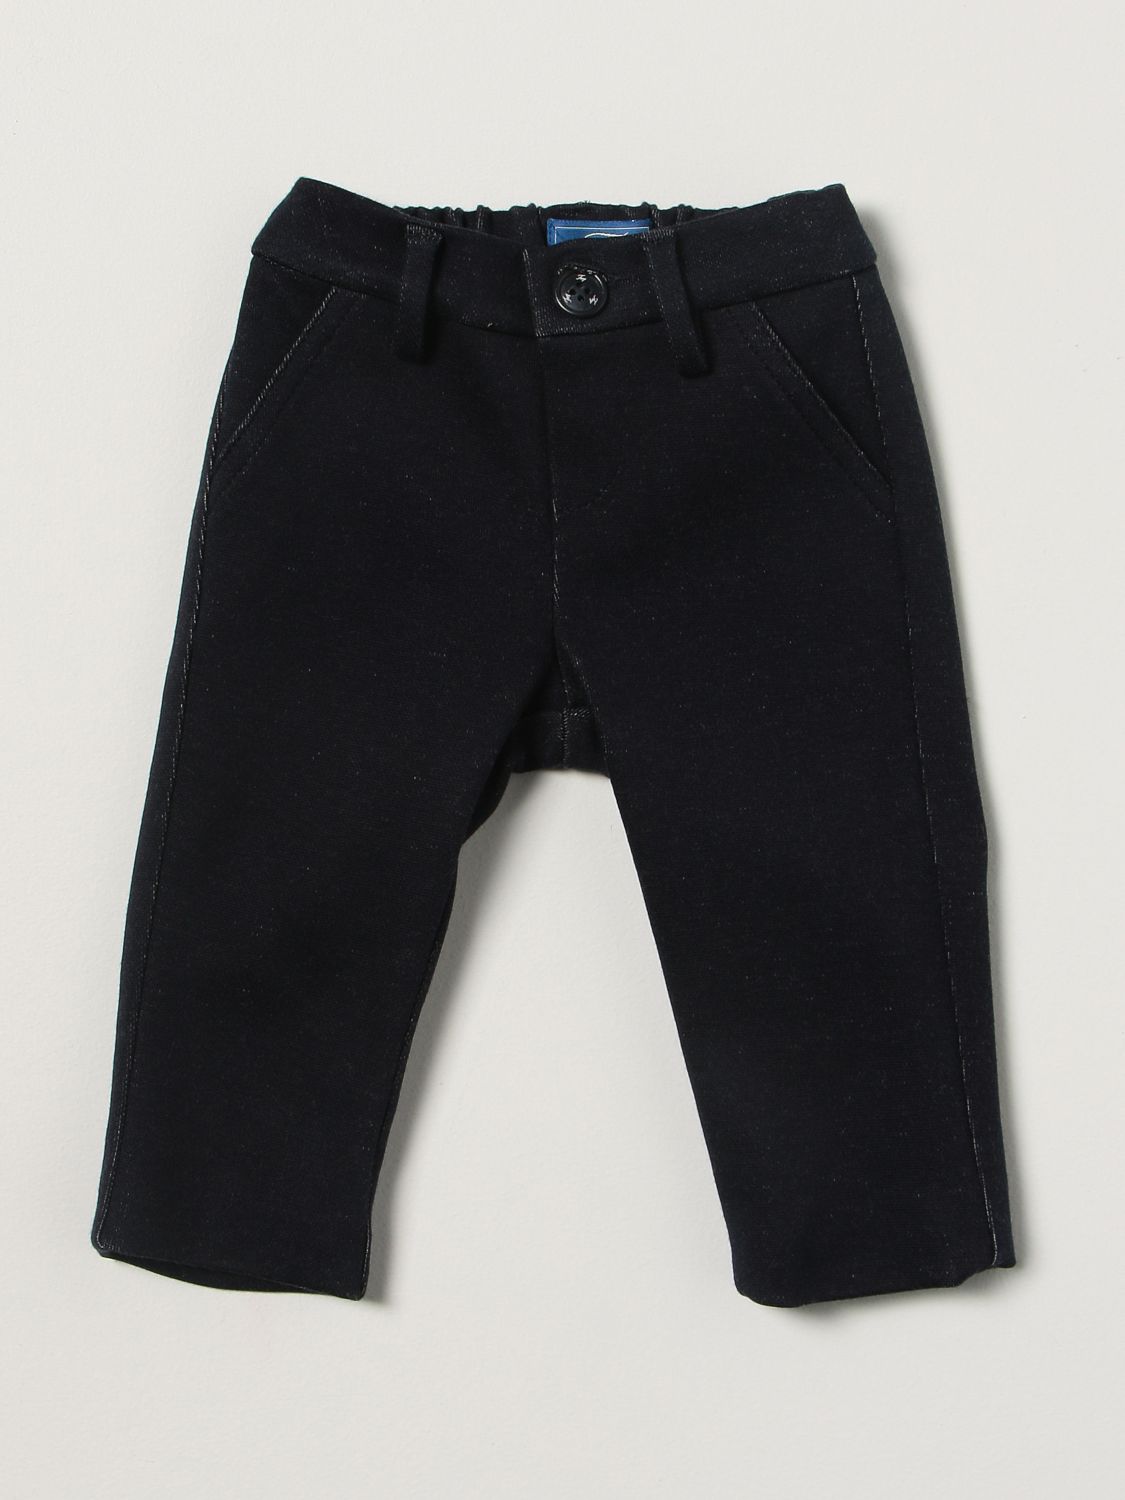 Pantalón Fay: Pantalón niños Fay azul oscuro 1